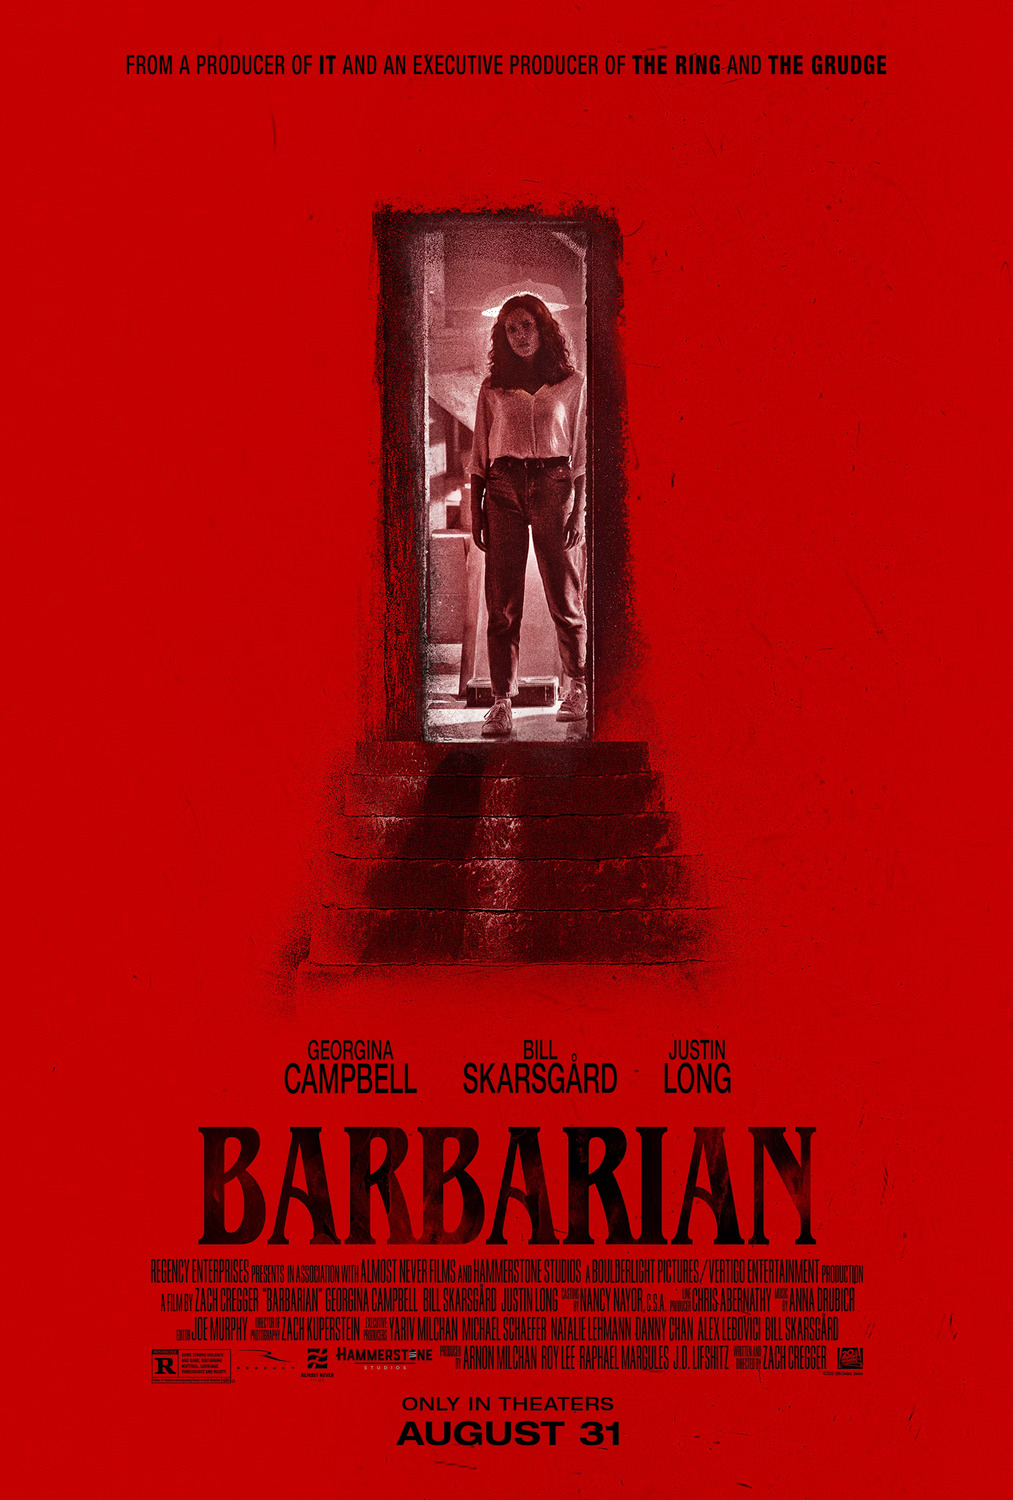 빌 스카스가드 출연 신작, "BARBARIAN" 한글자막 예고편 입니다.